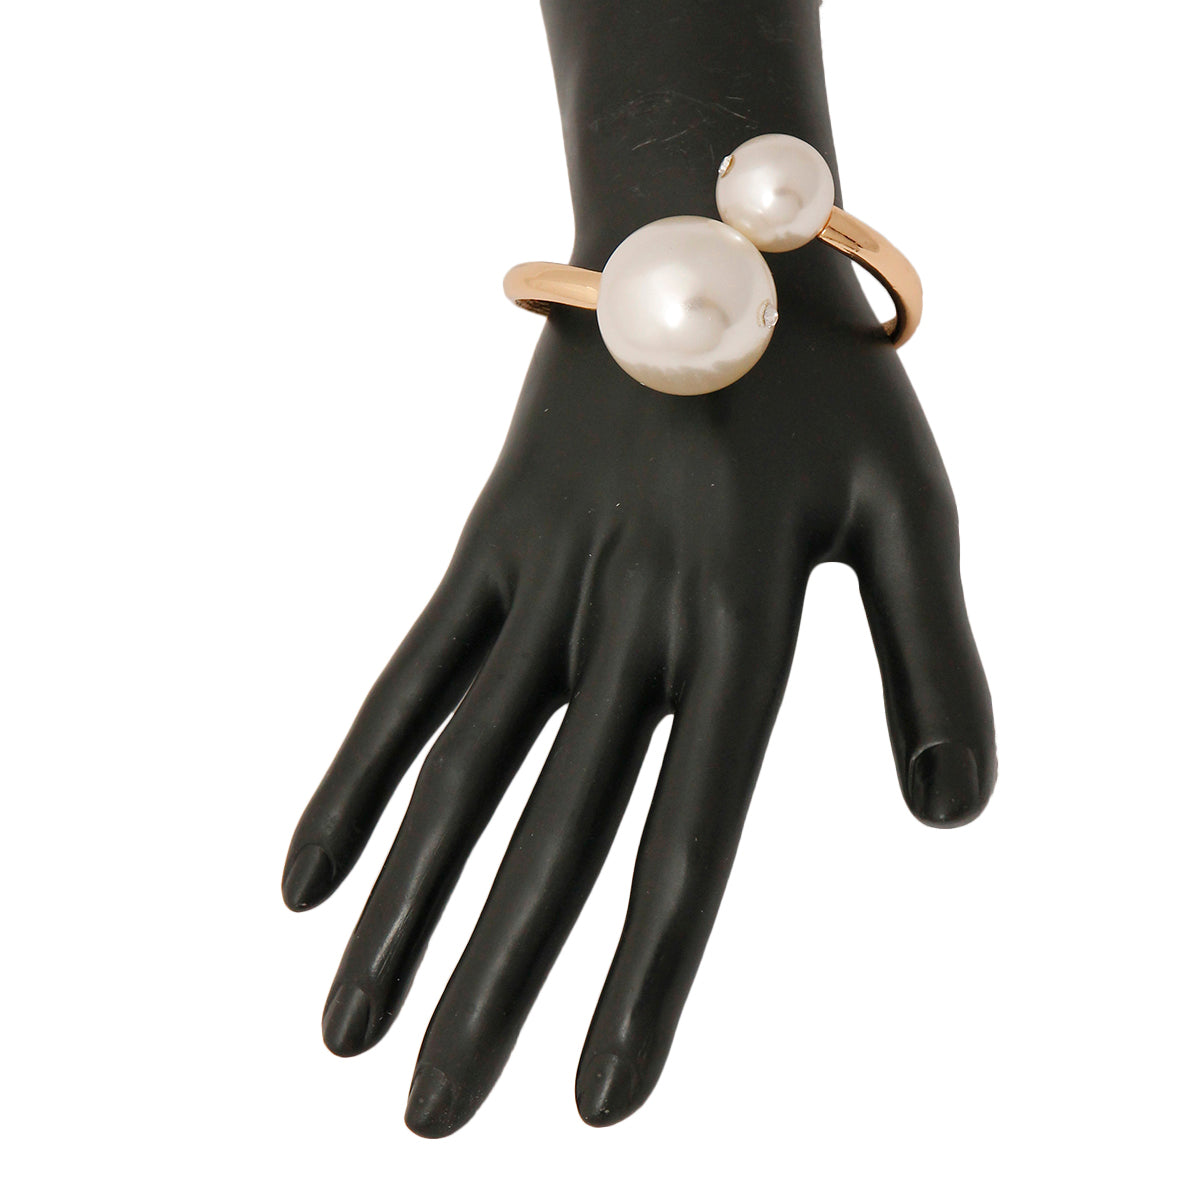 Pearl Hinged Bracelet